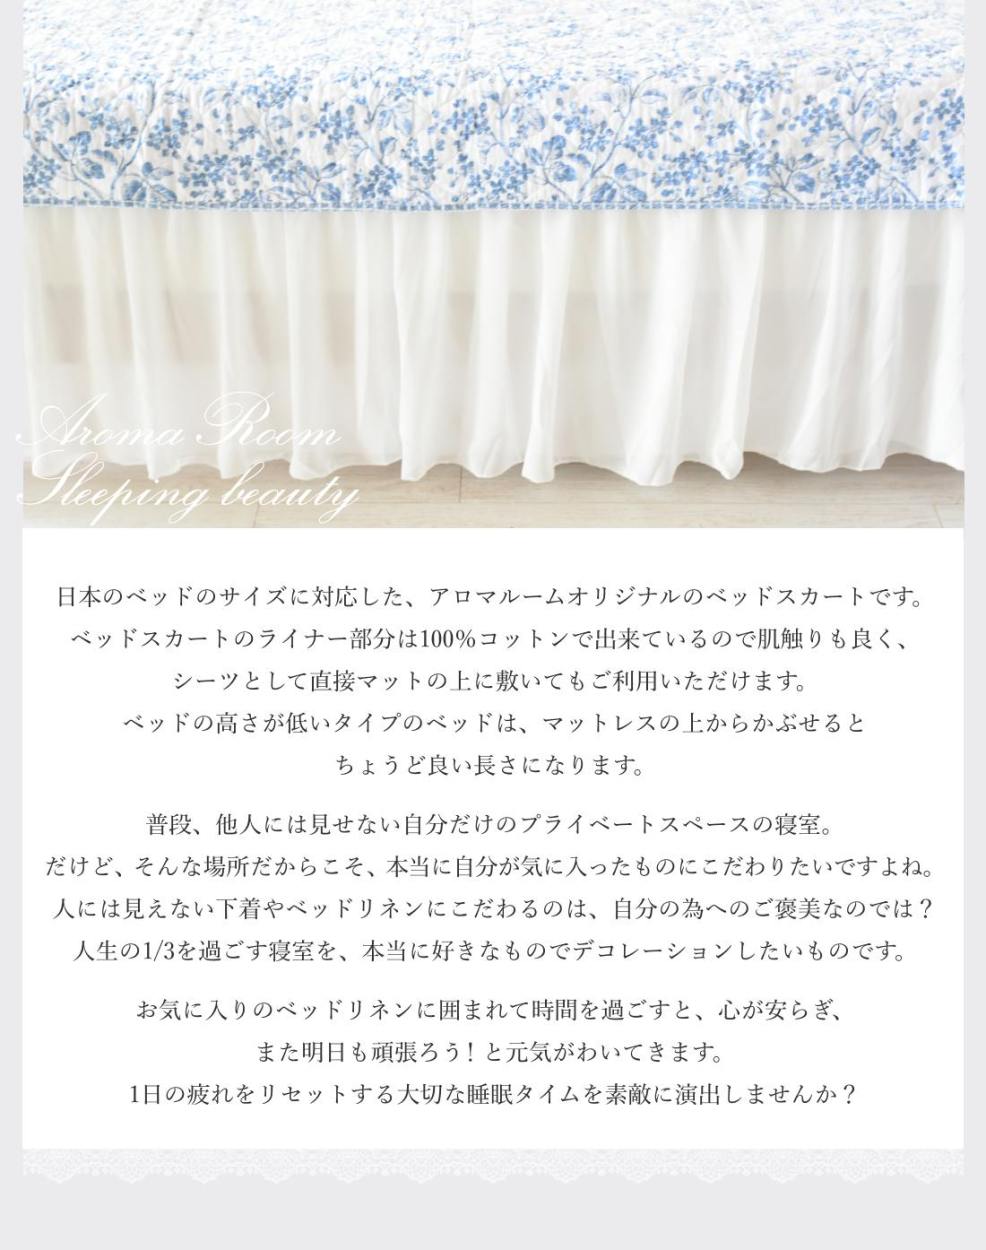 日本のベッドサイズに対応した、アロマルームオリジナルのベッドスカートです。